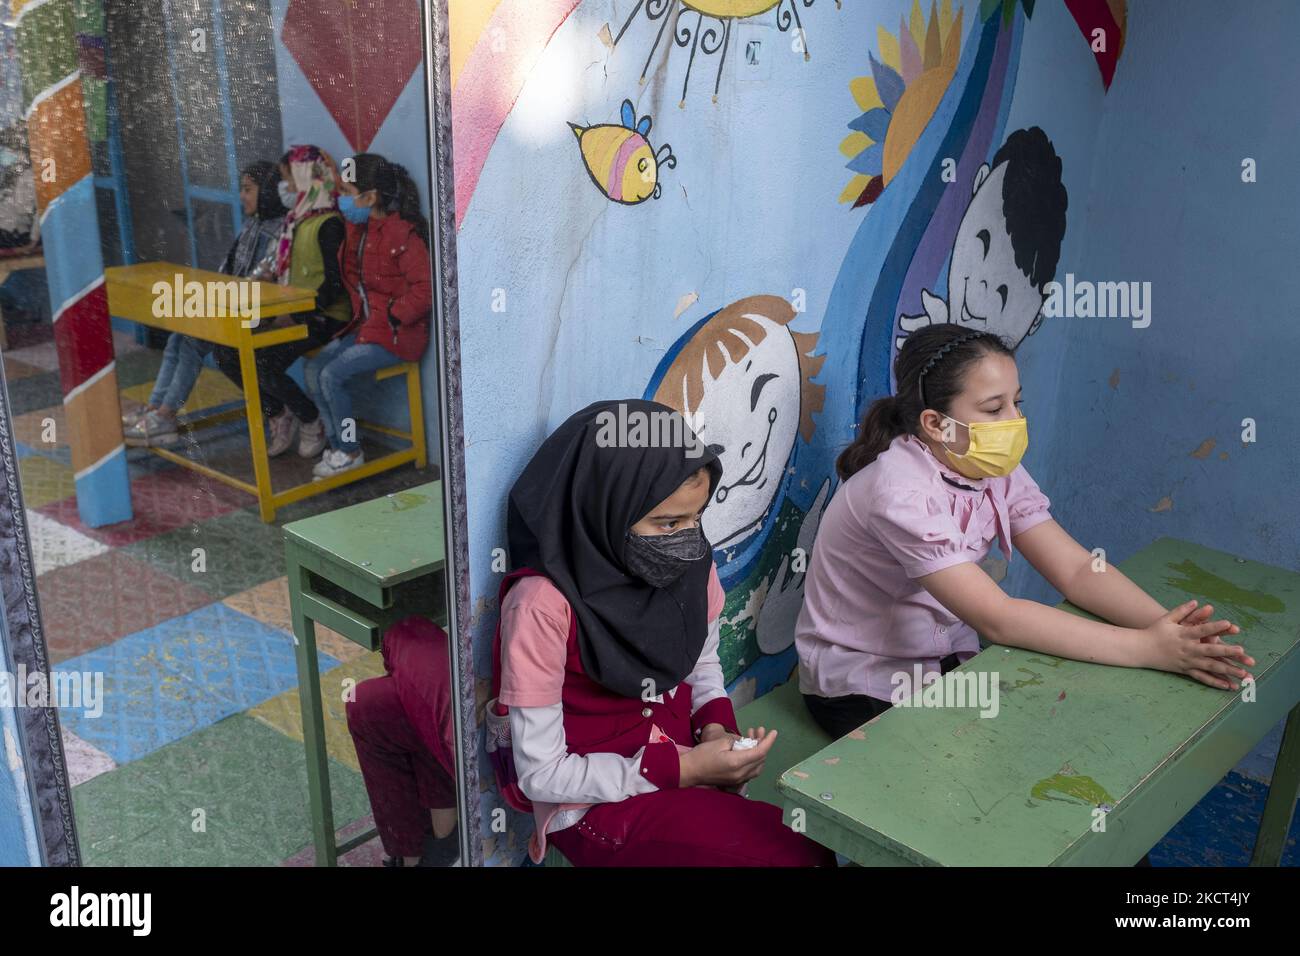 Le studentesse afghane rifugiate siedono sui banchi della scuola di Farhang nel primo giorno del nuovo anno accademico? Nel sud di Teheran il 1 novembre 2021. La scuola di Farhang è stata fondata nel 2000 dal rifugiato afgano Nader Mousavi che si è laureato in sociologia presso l'Università di Teheran, per i bambini rifugiati afghani, E ora due anni dopo l’inizio dell’epidemia COVID-19 in Iran, dove la scuola operava a tempo parziale, ha iniziato a funzionare a tempo pieno e le scolaresche e gli scolari afghani possono frequentare la scuola. Le famiglie non devono pagare i soldi per la lezione perché è gratuita Foto Stock